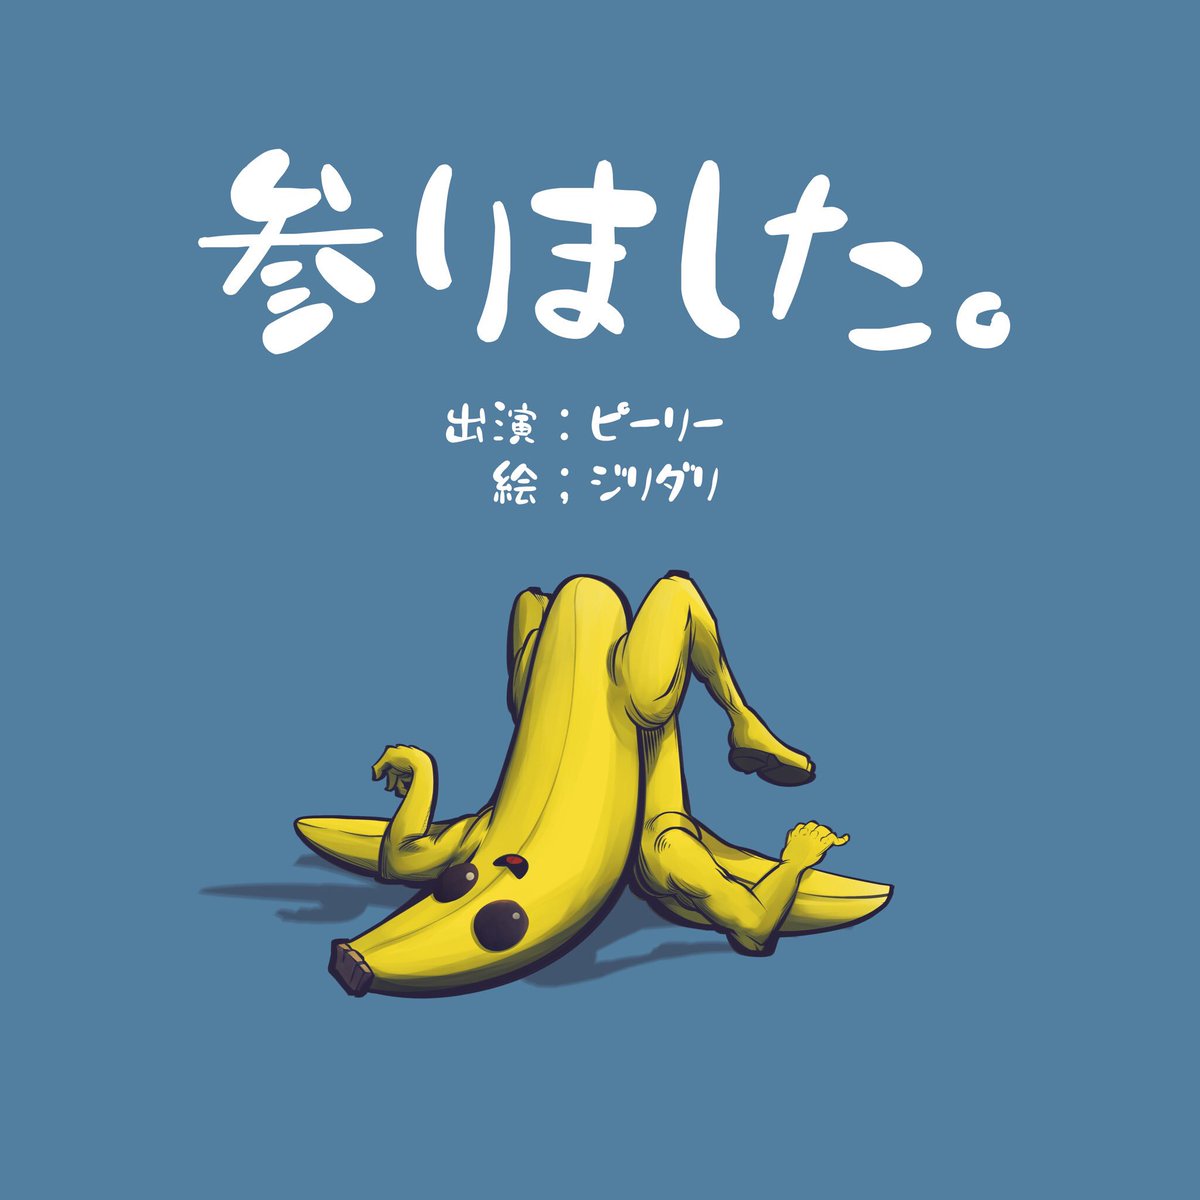 ジリダり ケガで休止中 V Twitter バナナスキンこと ピーリーを描いてみました バナナなんで最終的に剥けるよね Fortnite フォートナイト Fortniteart フォートナイトイラスト